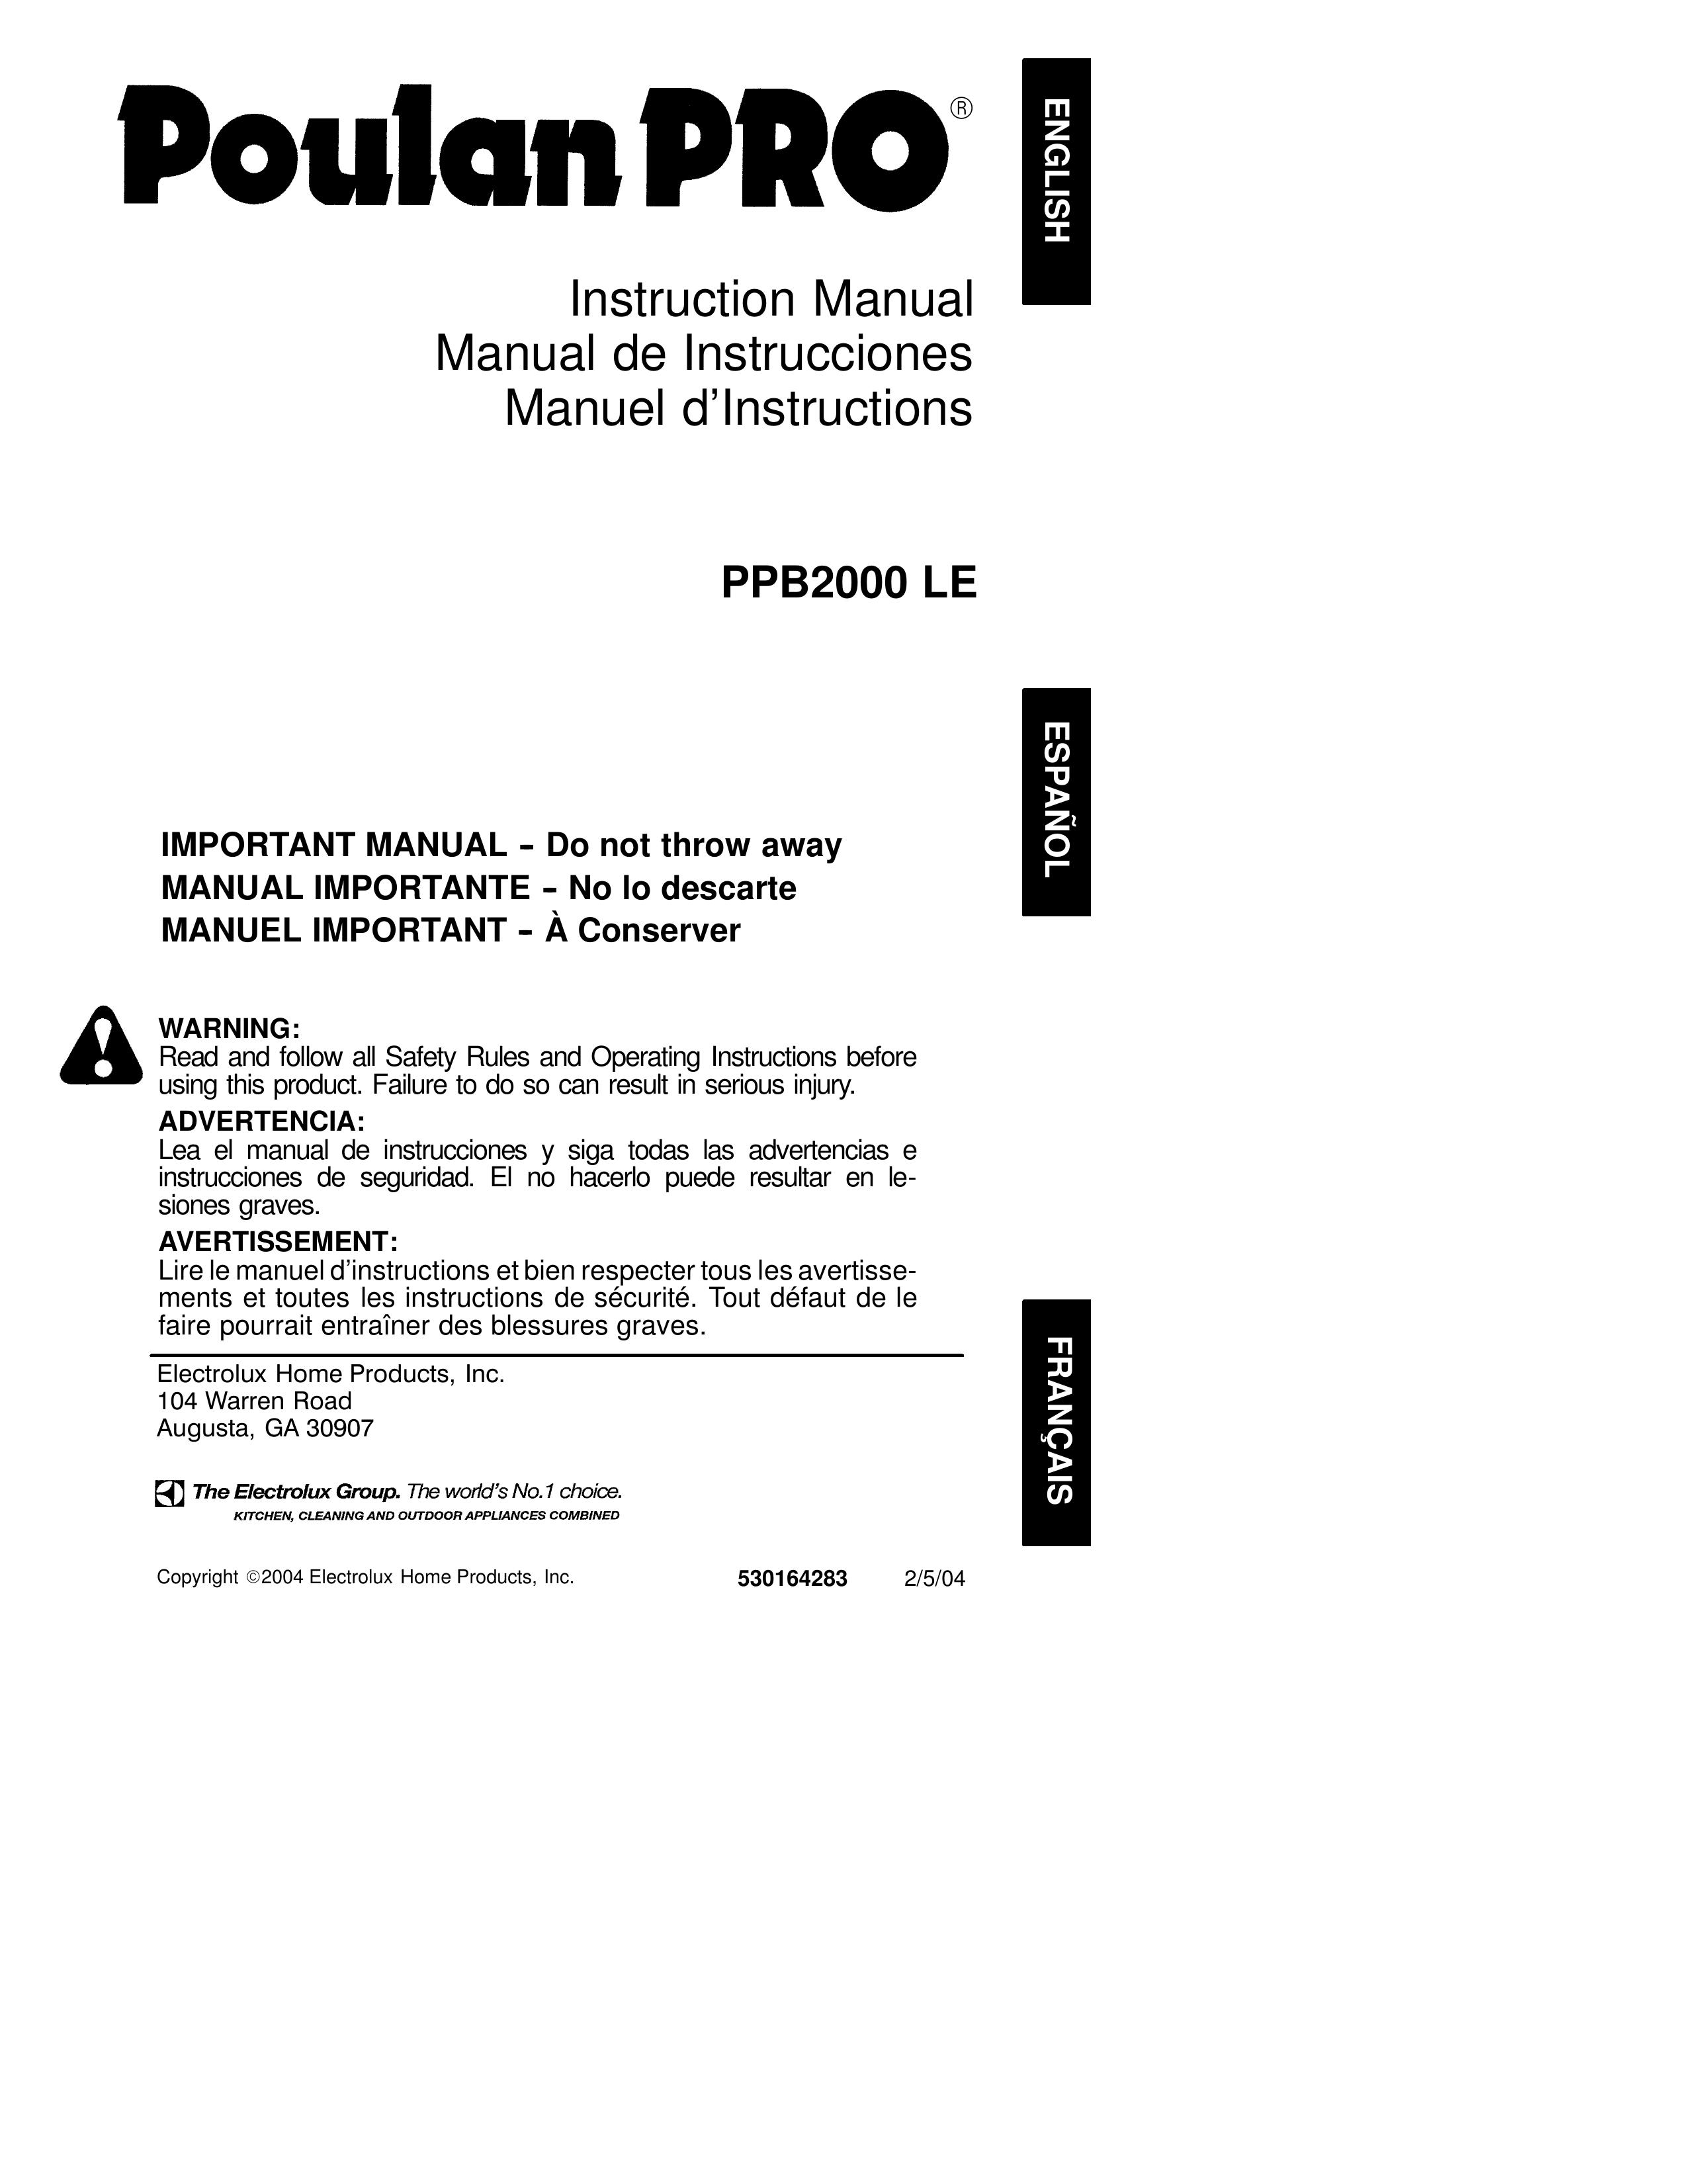 Poulan 530164283 Blower User Manual